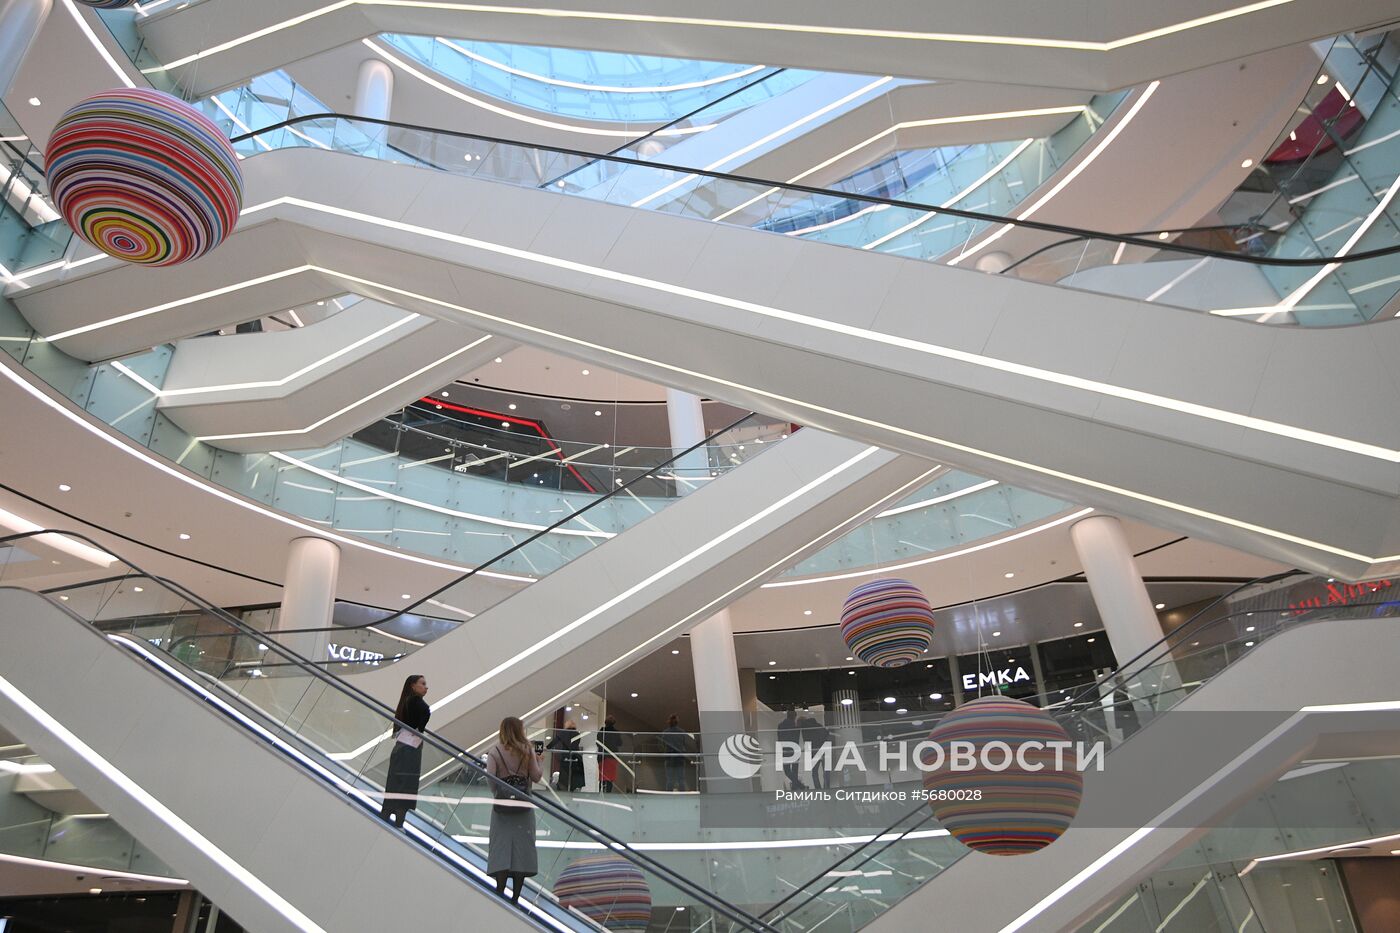 ТРЦ «Каширская плаза» открылся в Москве